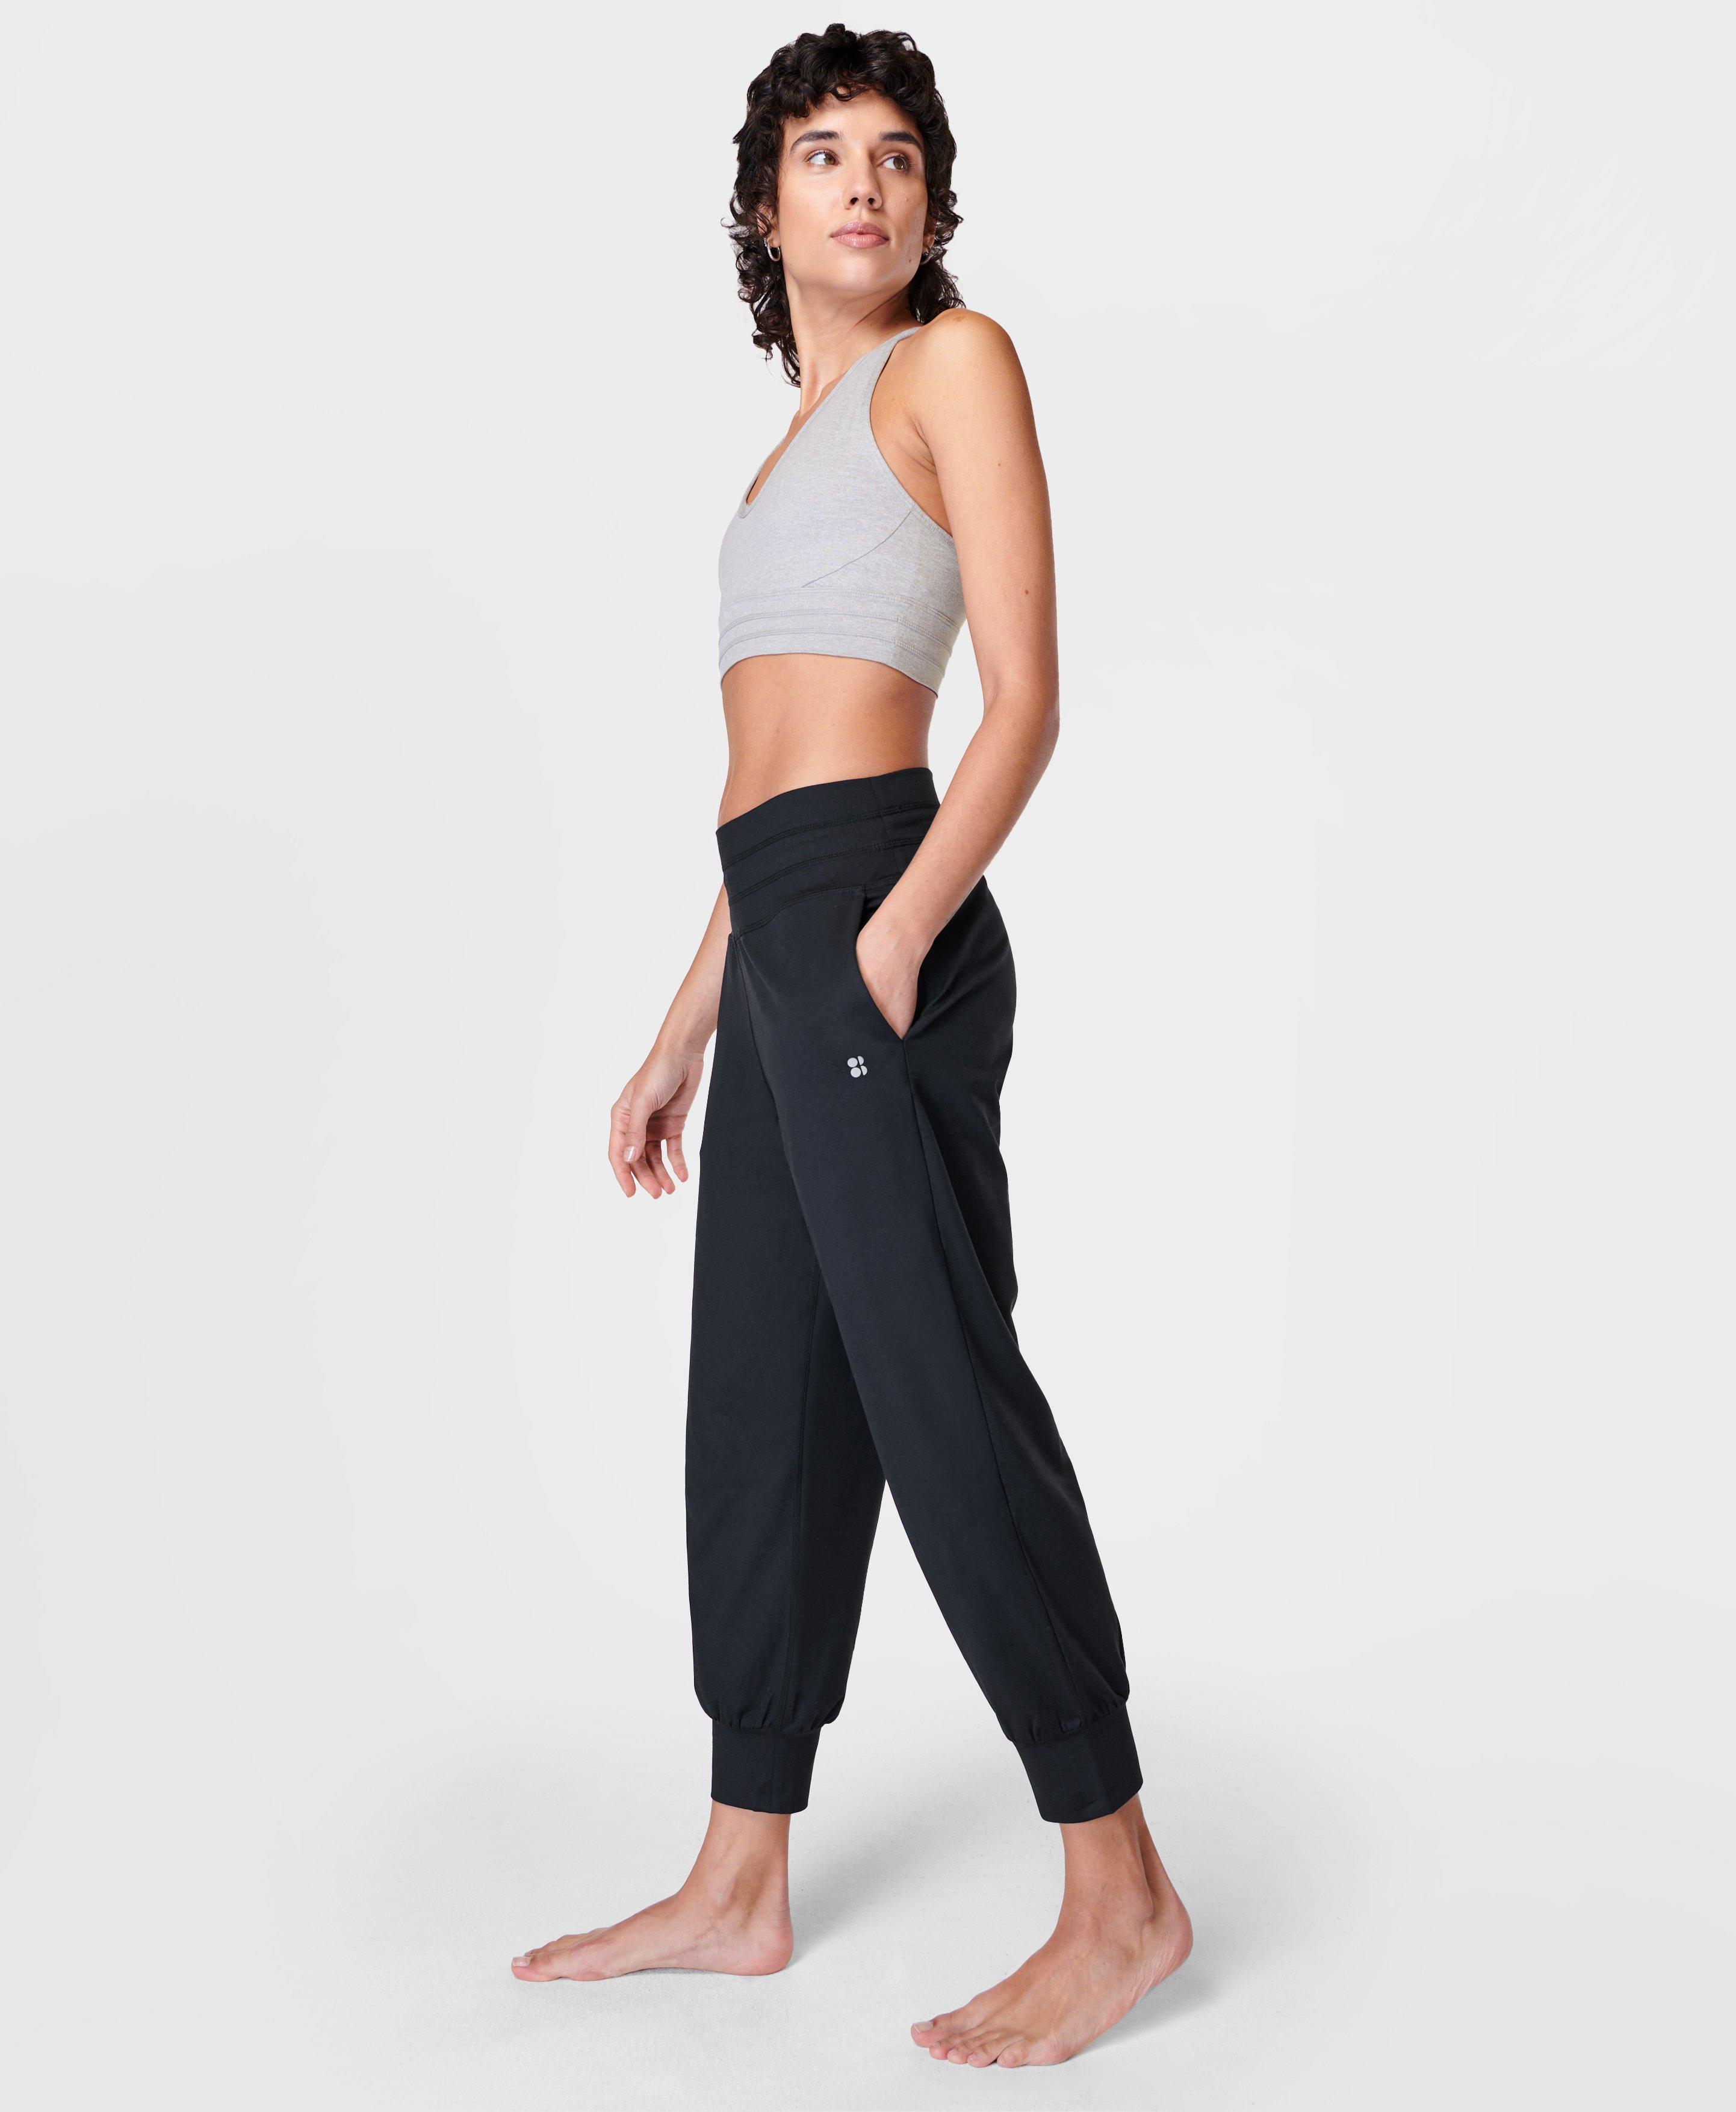 Gaia Collection, Yoga Pants, Bras & Jumpsuits